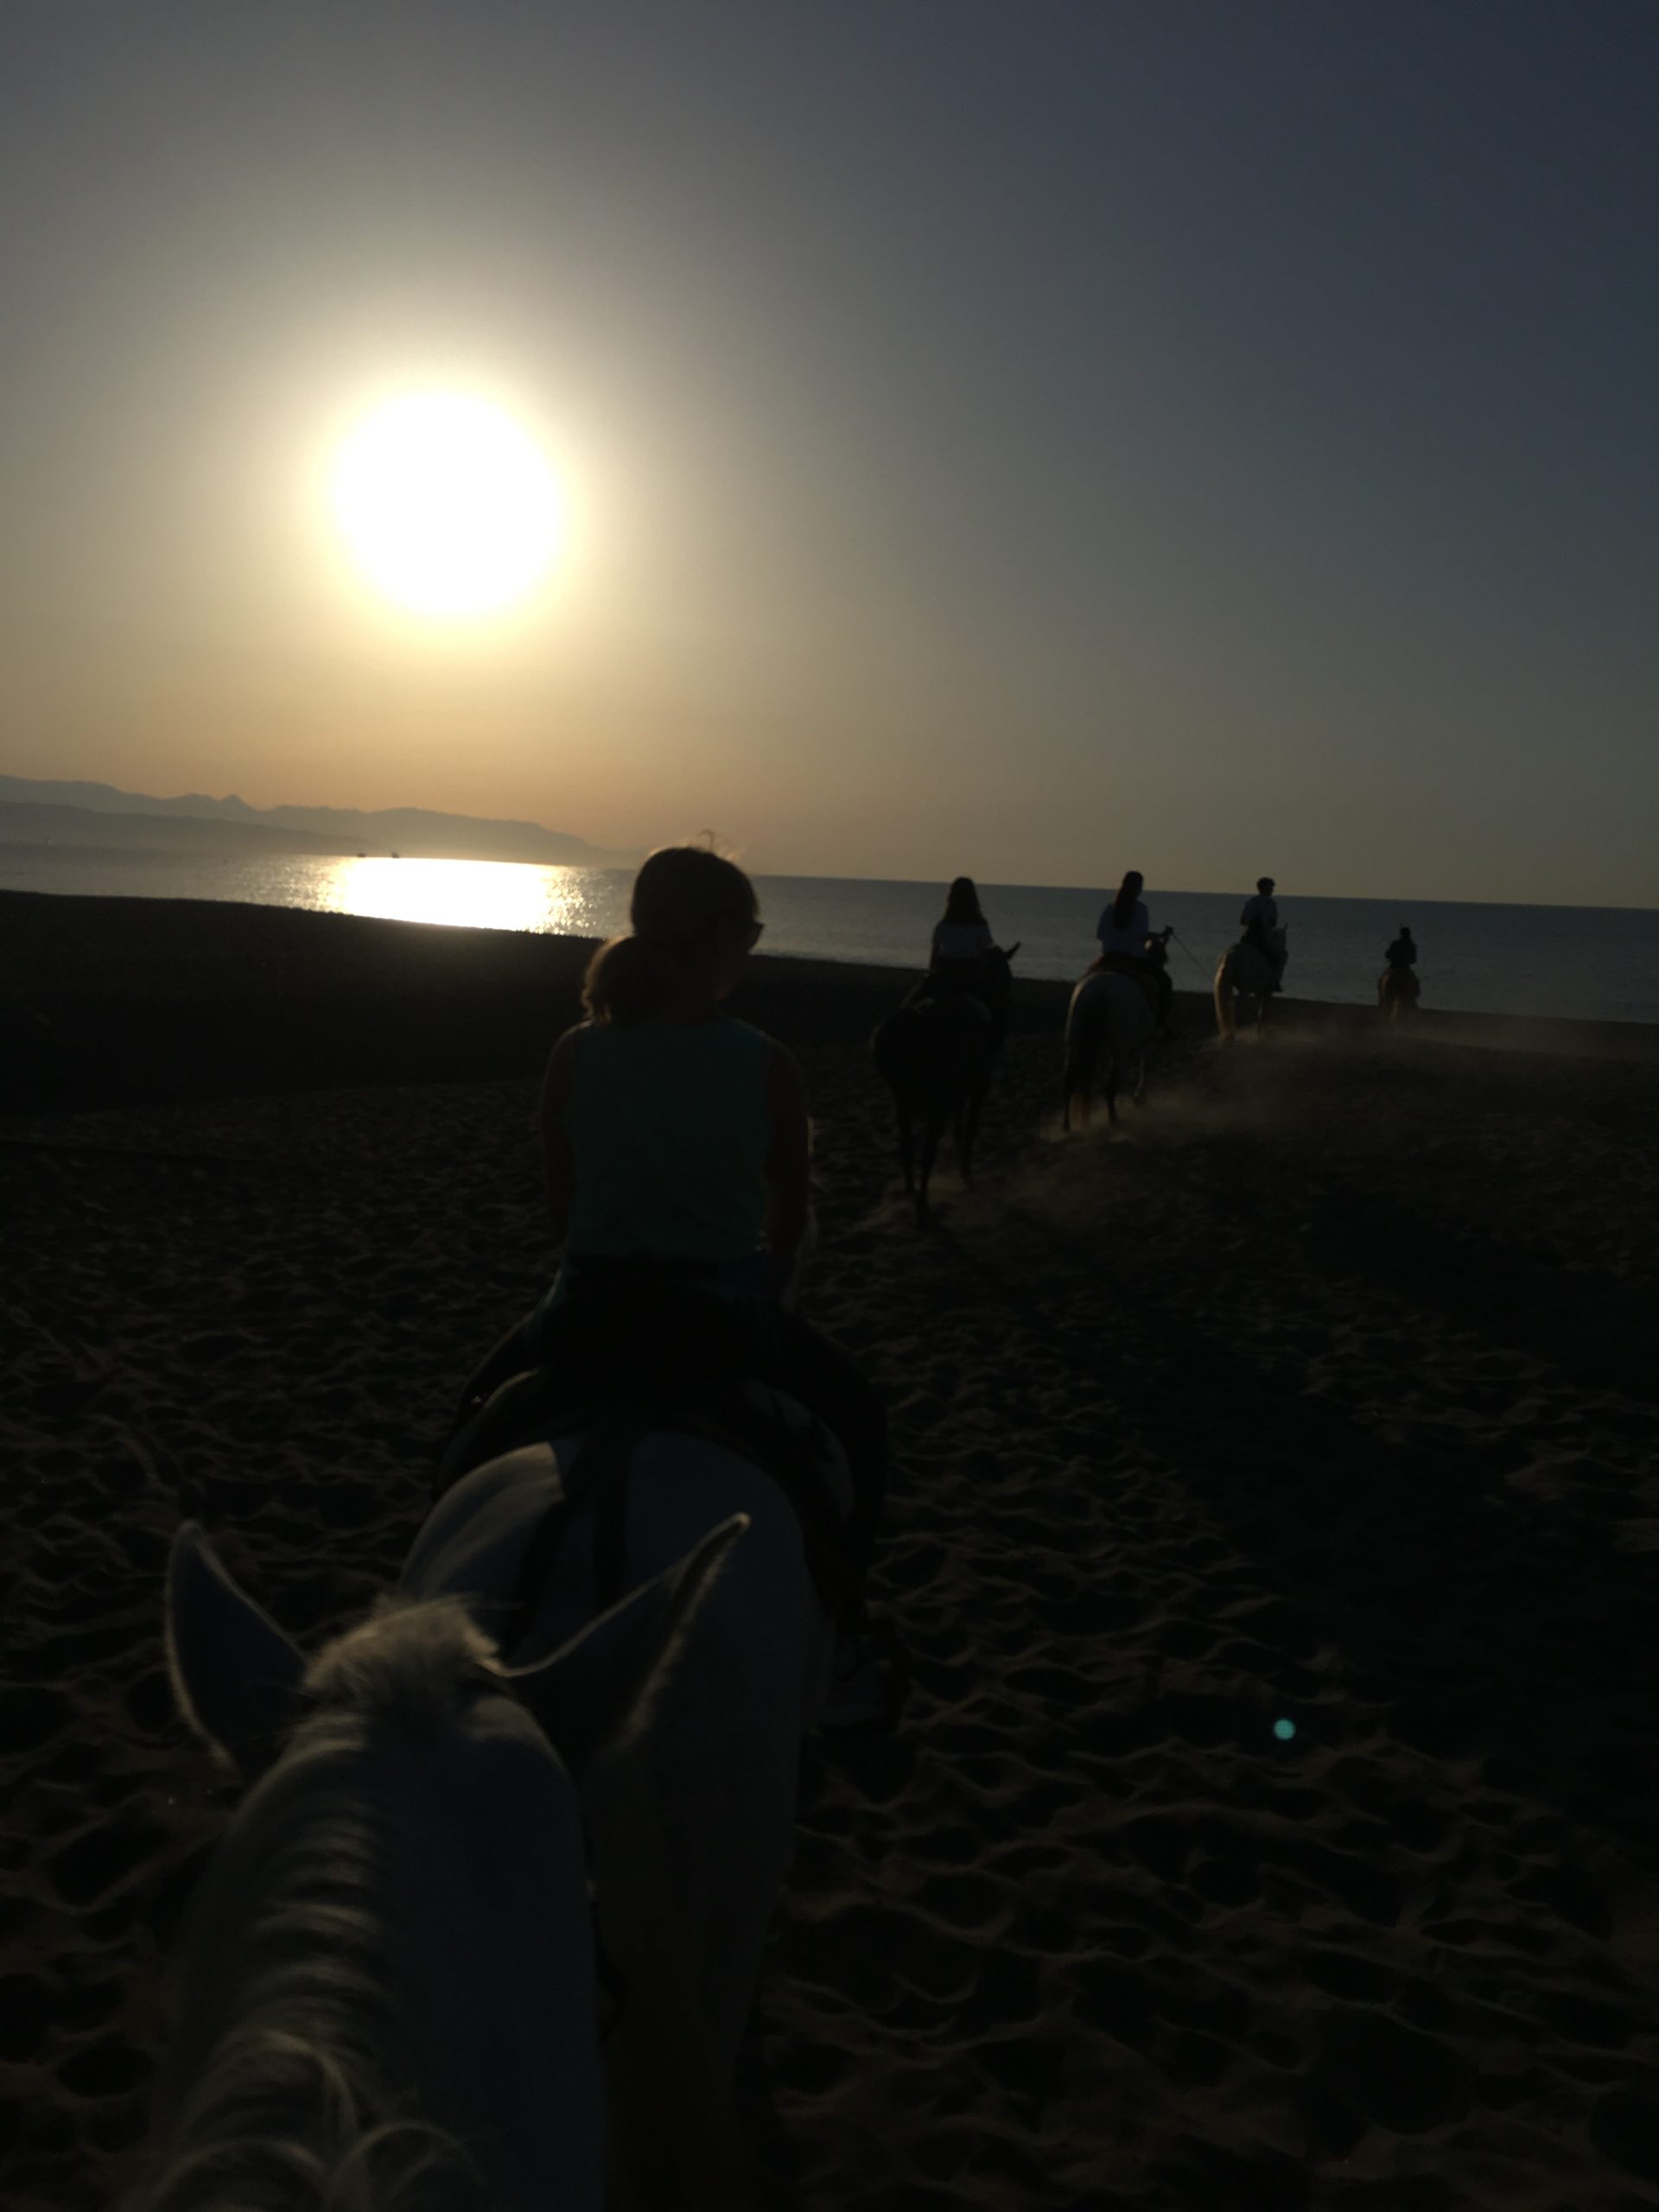 Paseo a caballo por la playa en torremolinos